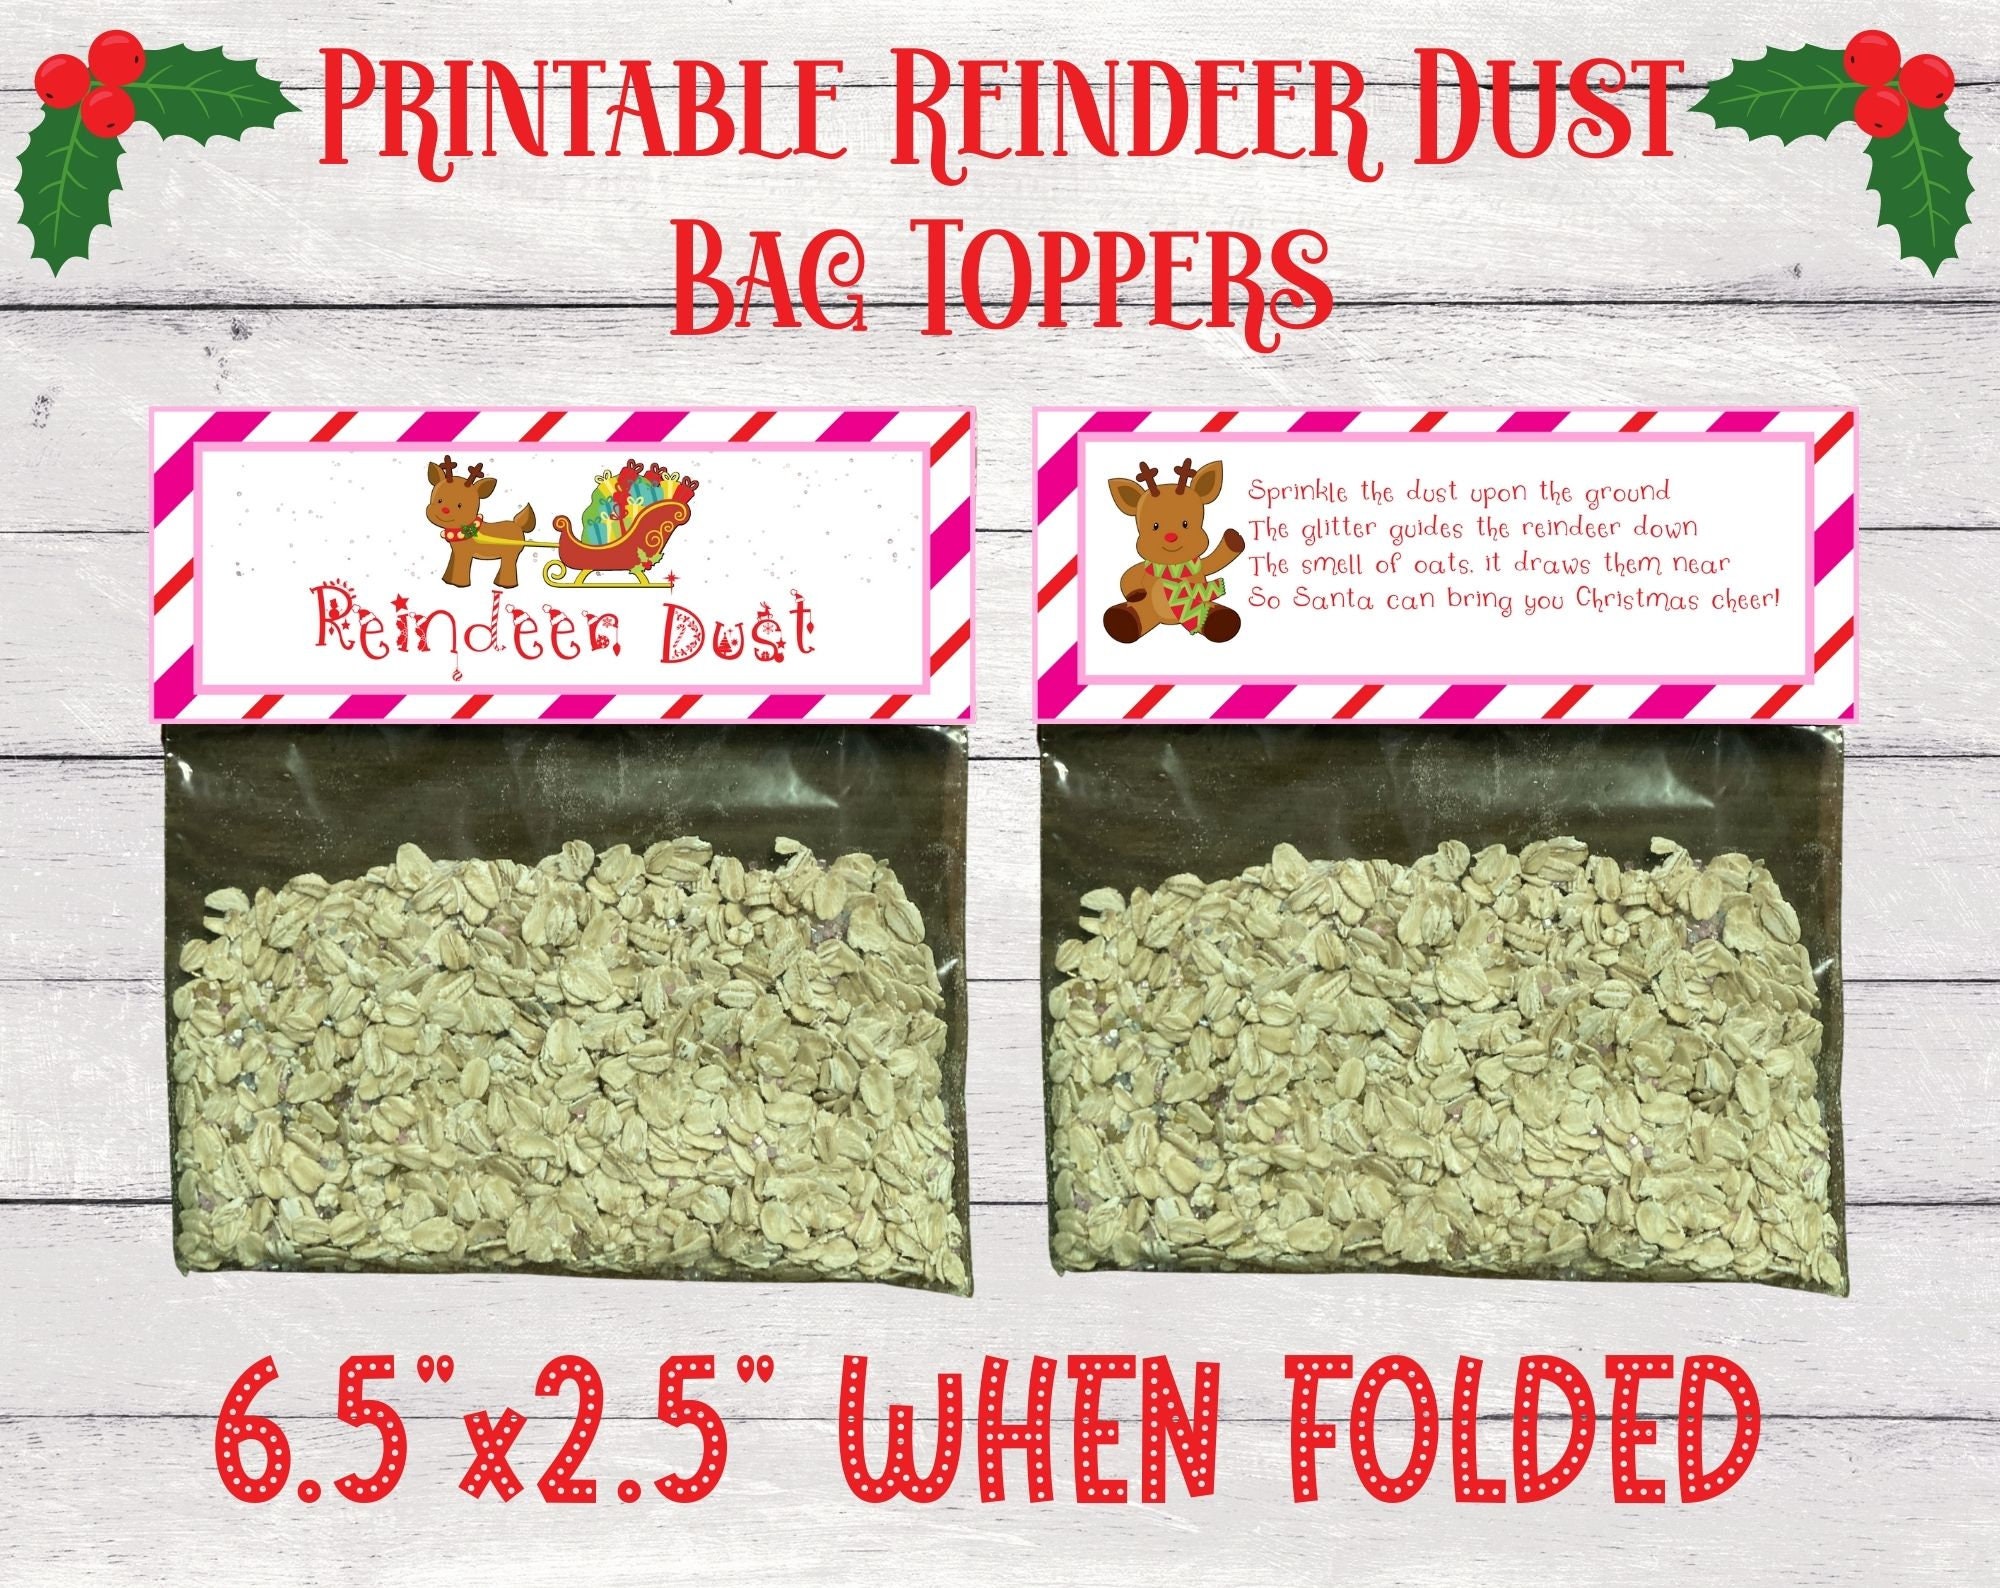 Magic Reindeer Dust Poem and Reindeer Food Bag Label